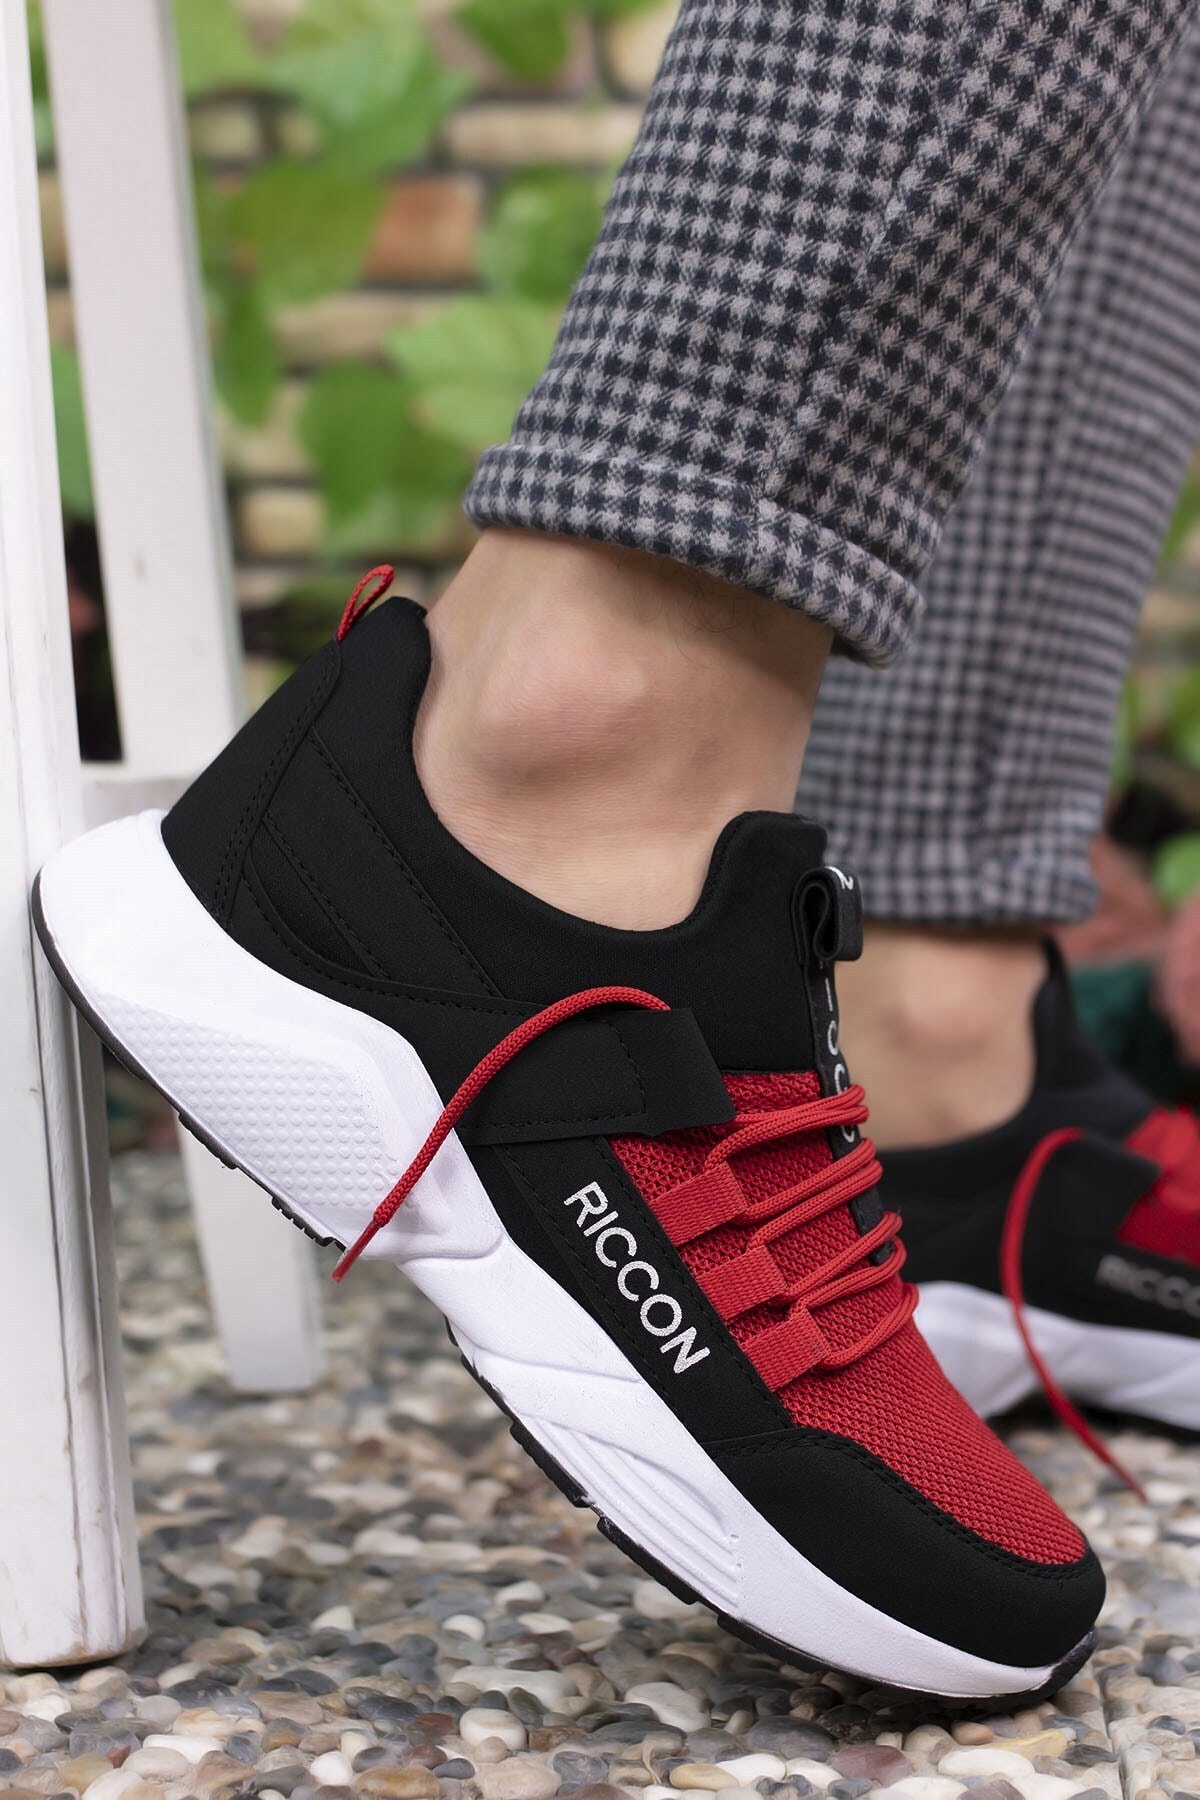 کفش ورزشی یونیسکس مشکی قرمز ریکون Riccon (برند ترکیه)